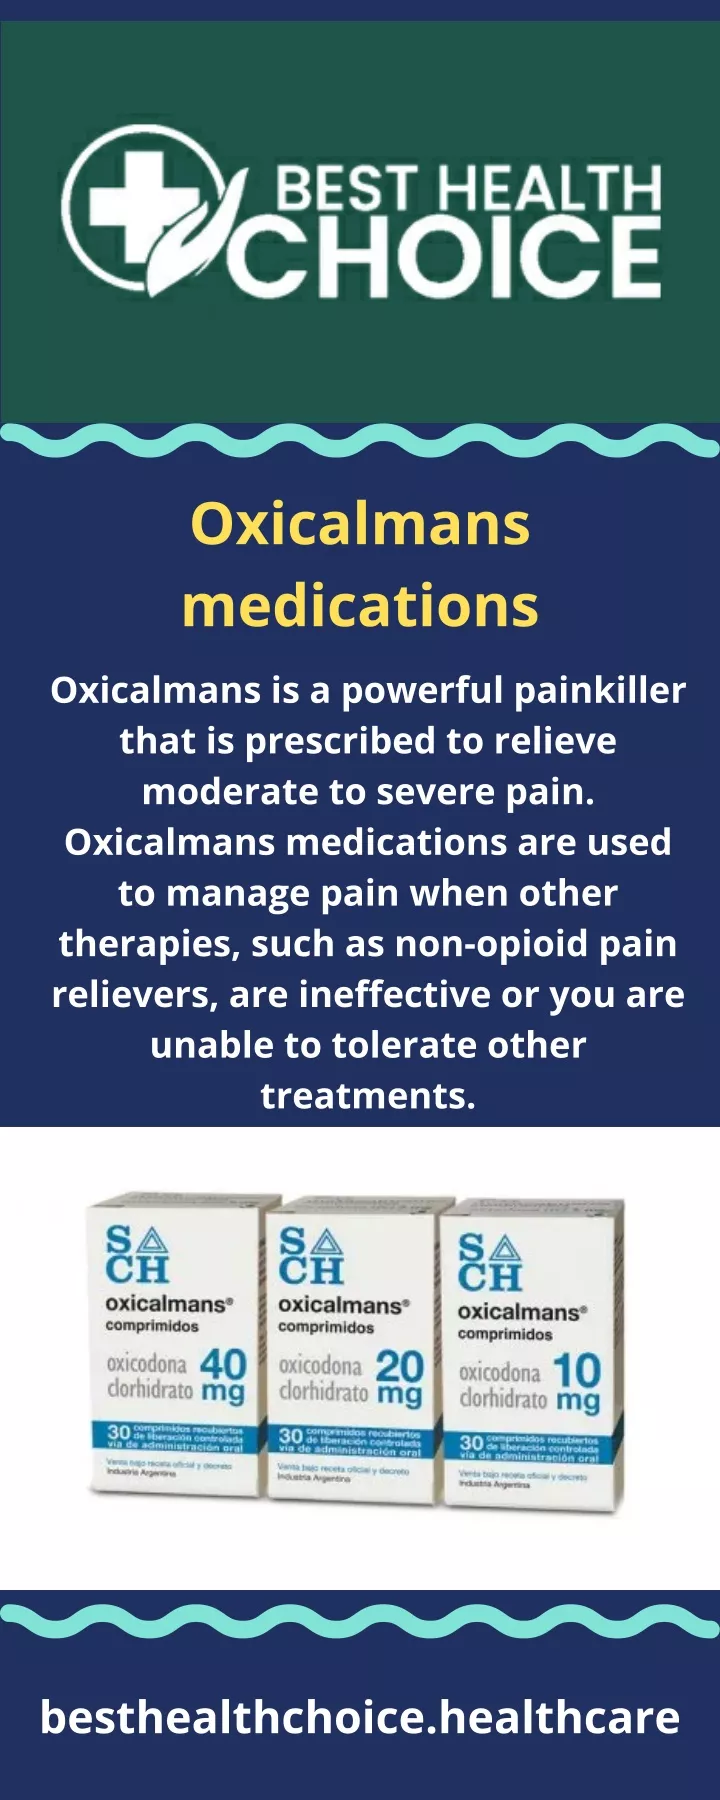 oxicalmans medications